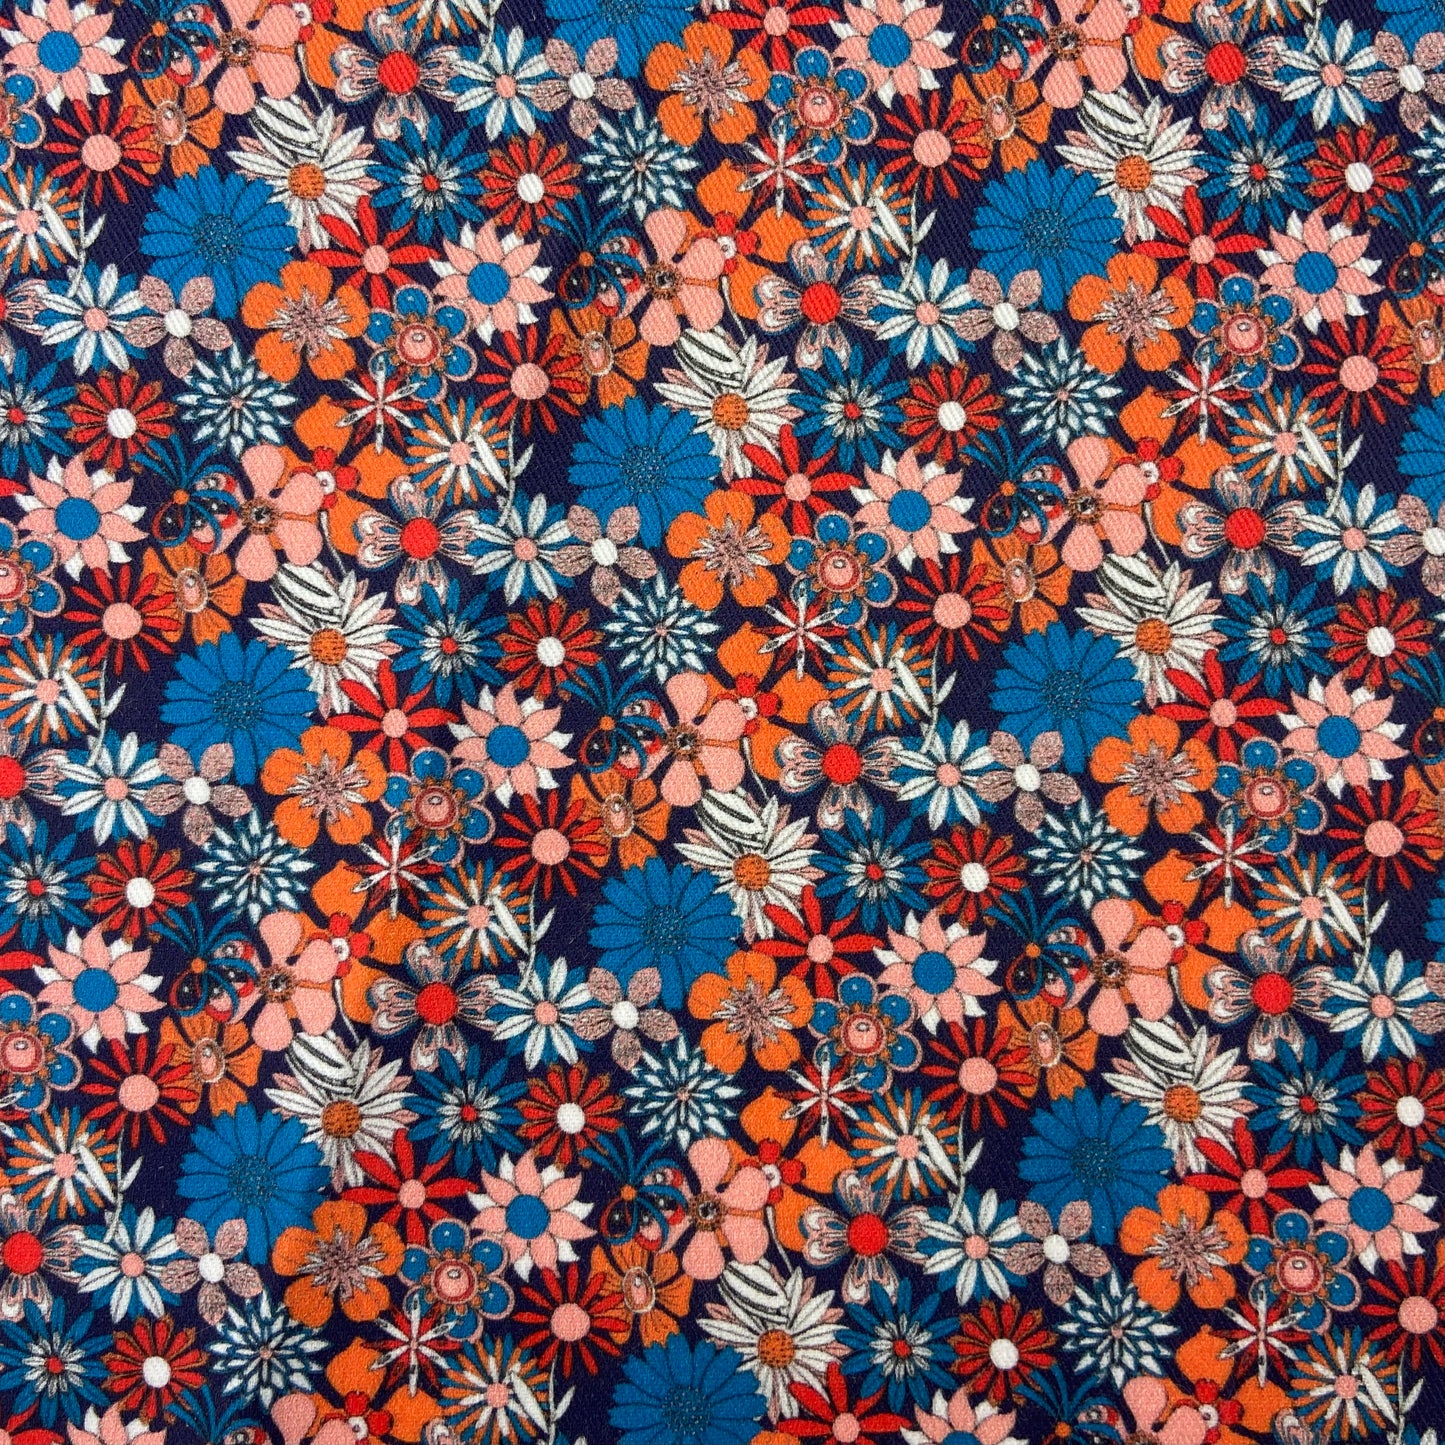 Sergé de coton imprimé motif fleurs colorées orange rouge bleu roi fond bleu marine années 70 rétro vintage psychédélique asters marguerites pétales couleurs vives 